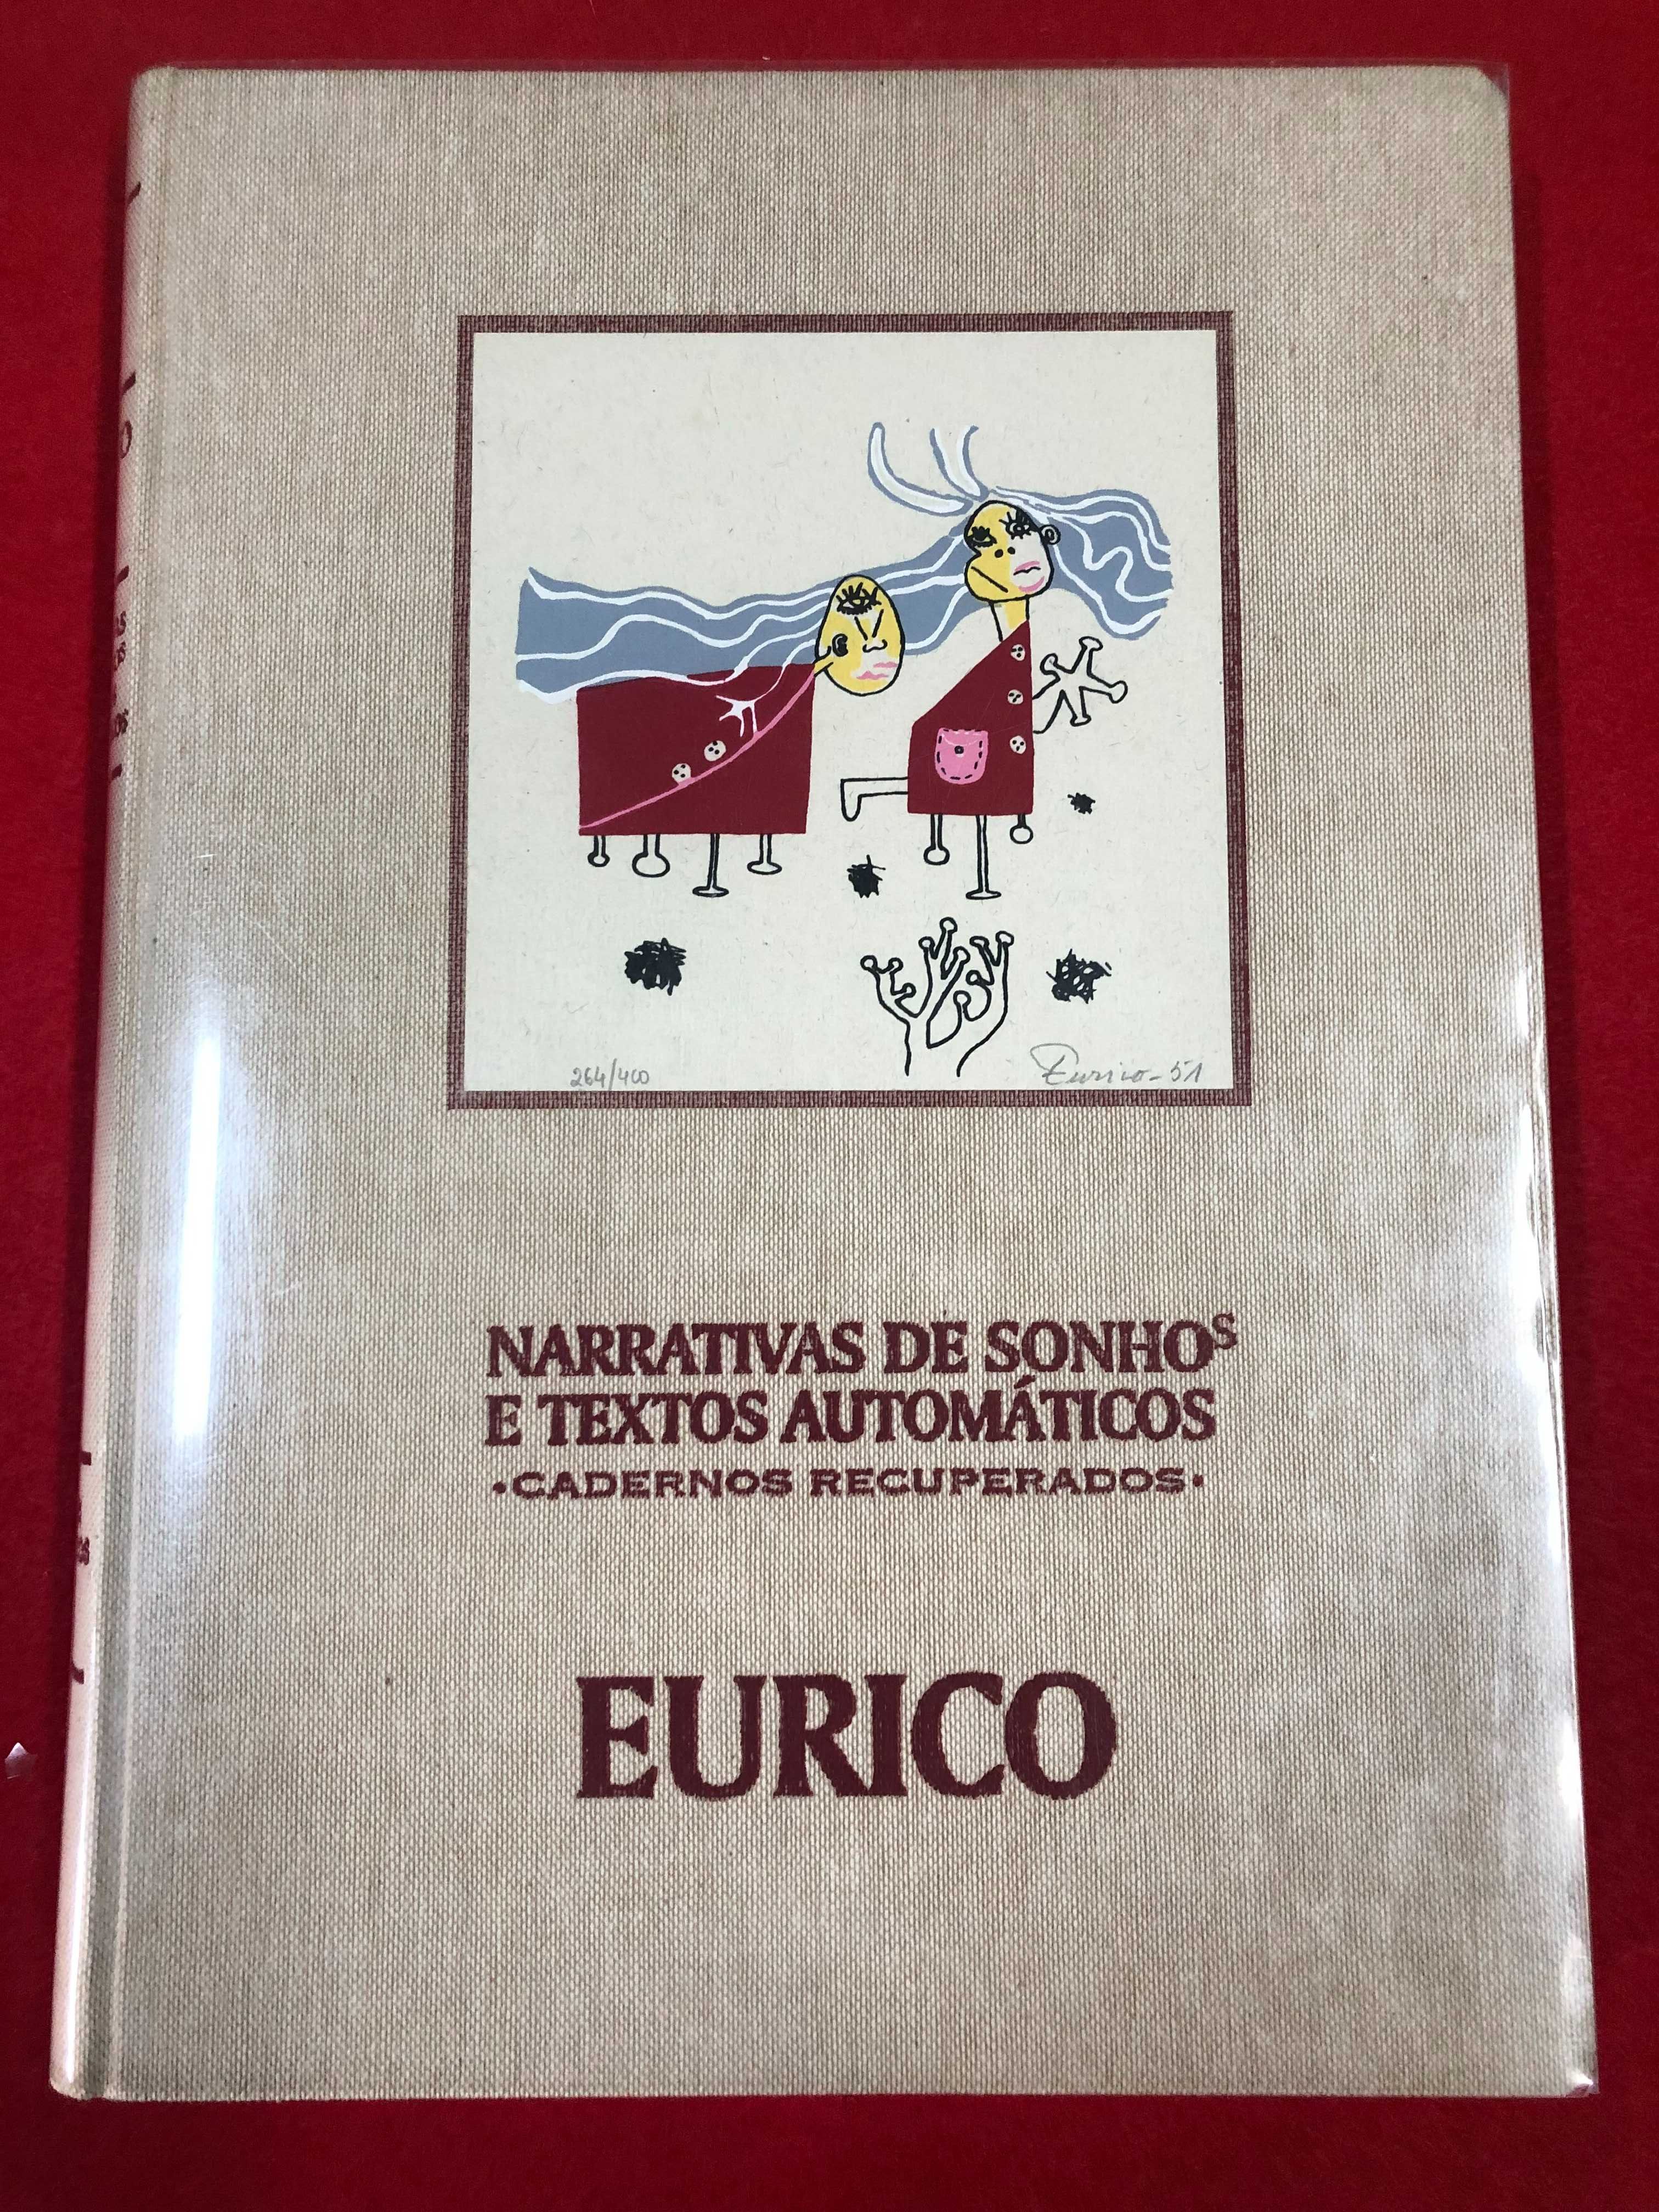 Eurico – Narrativas de sonhos e textos automáticos - Eurico Gonçalves